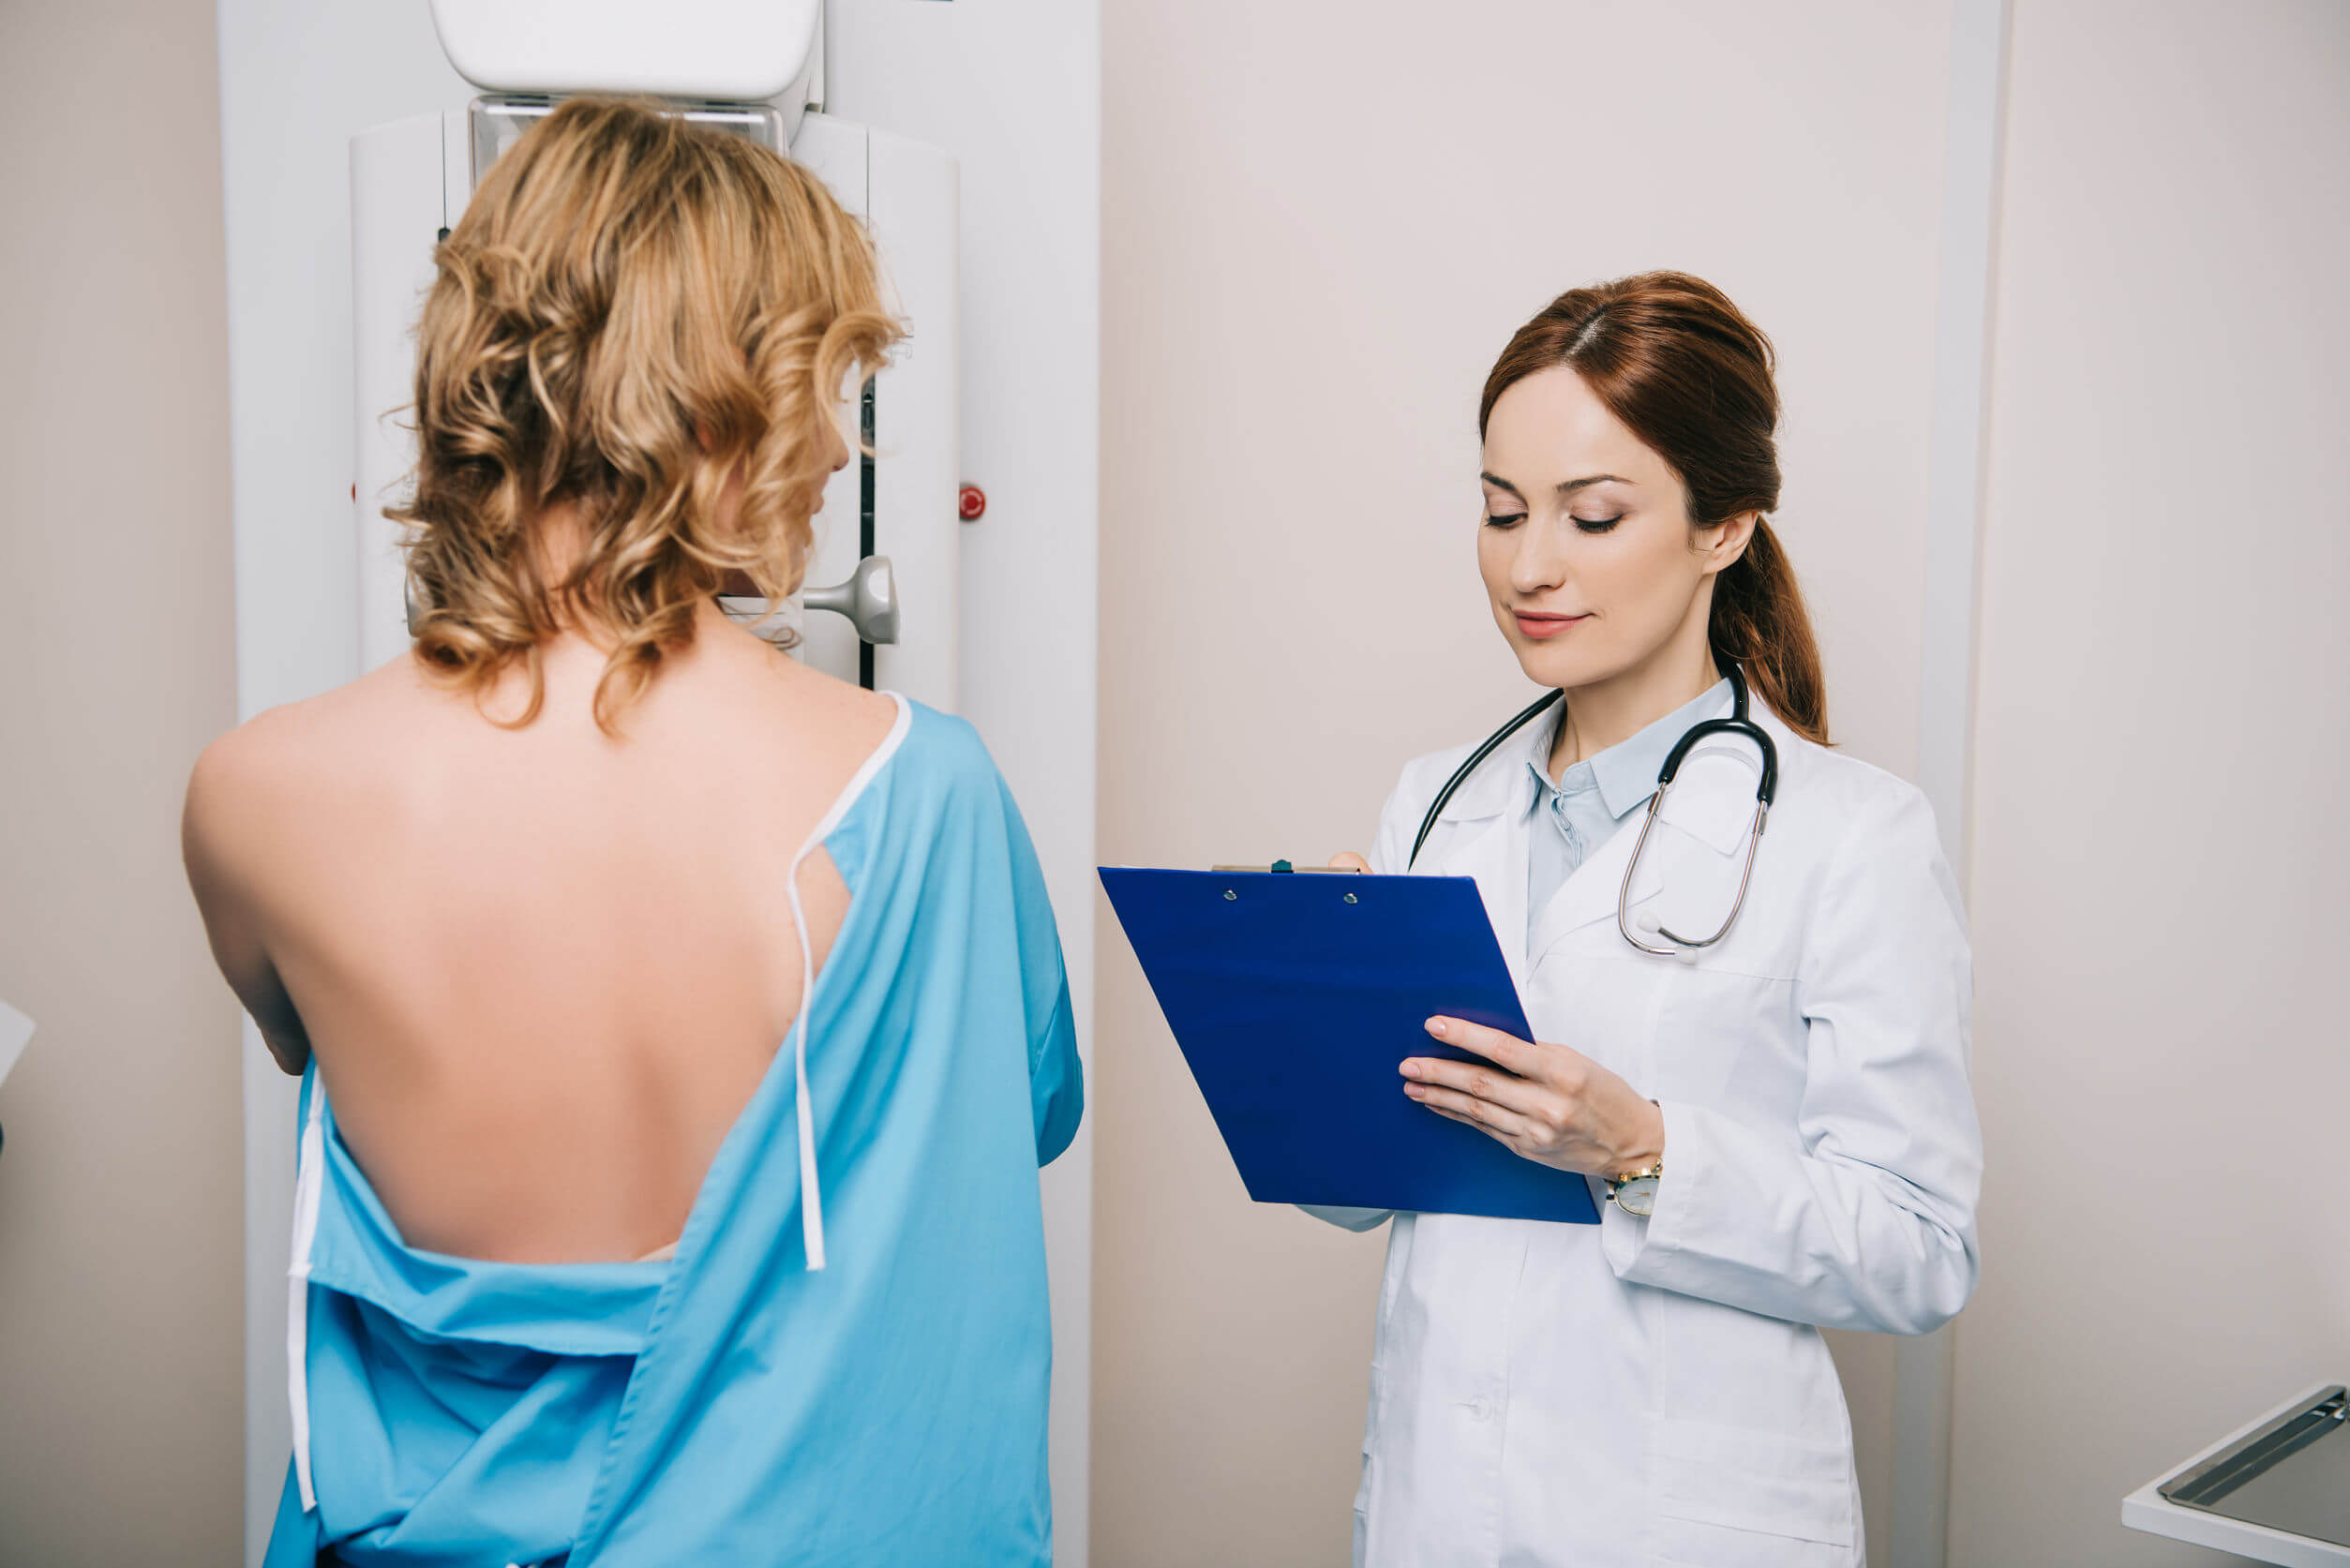 Os exames ginecológicos essenciais incluem a mamografia.